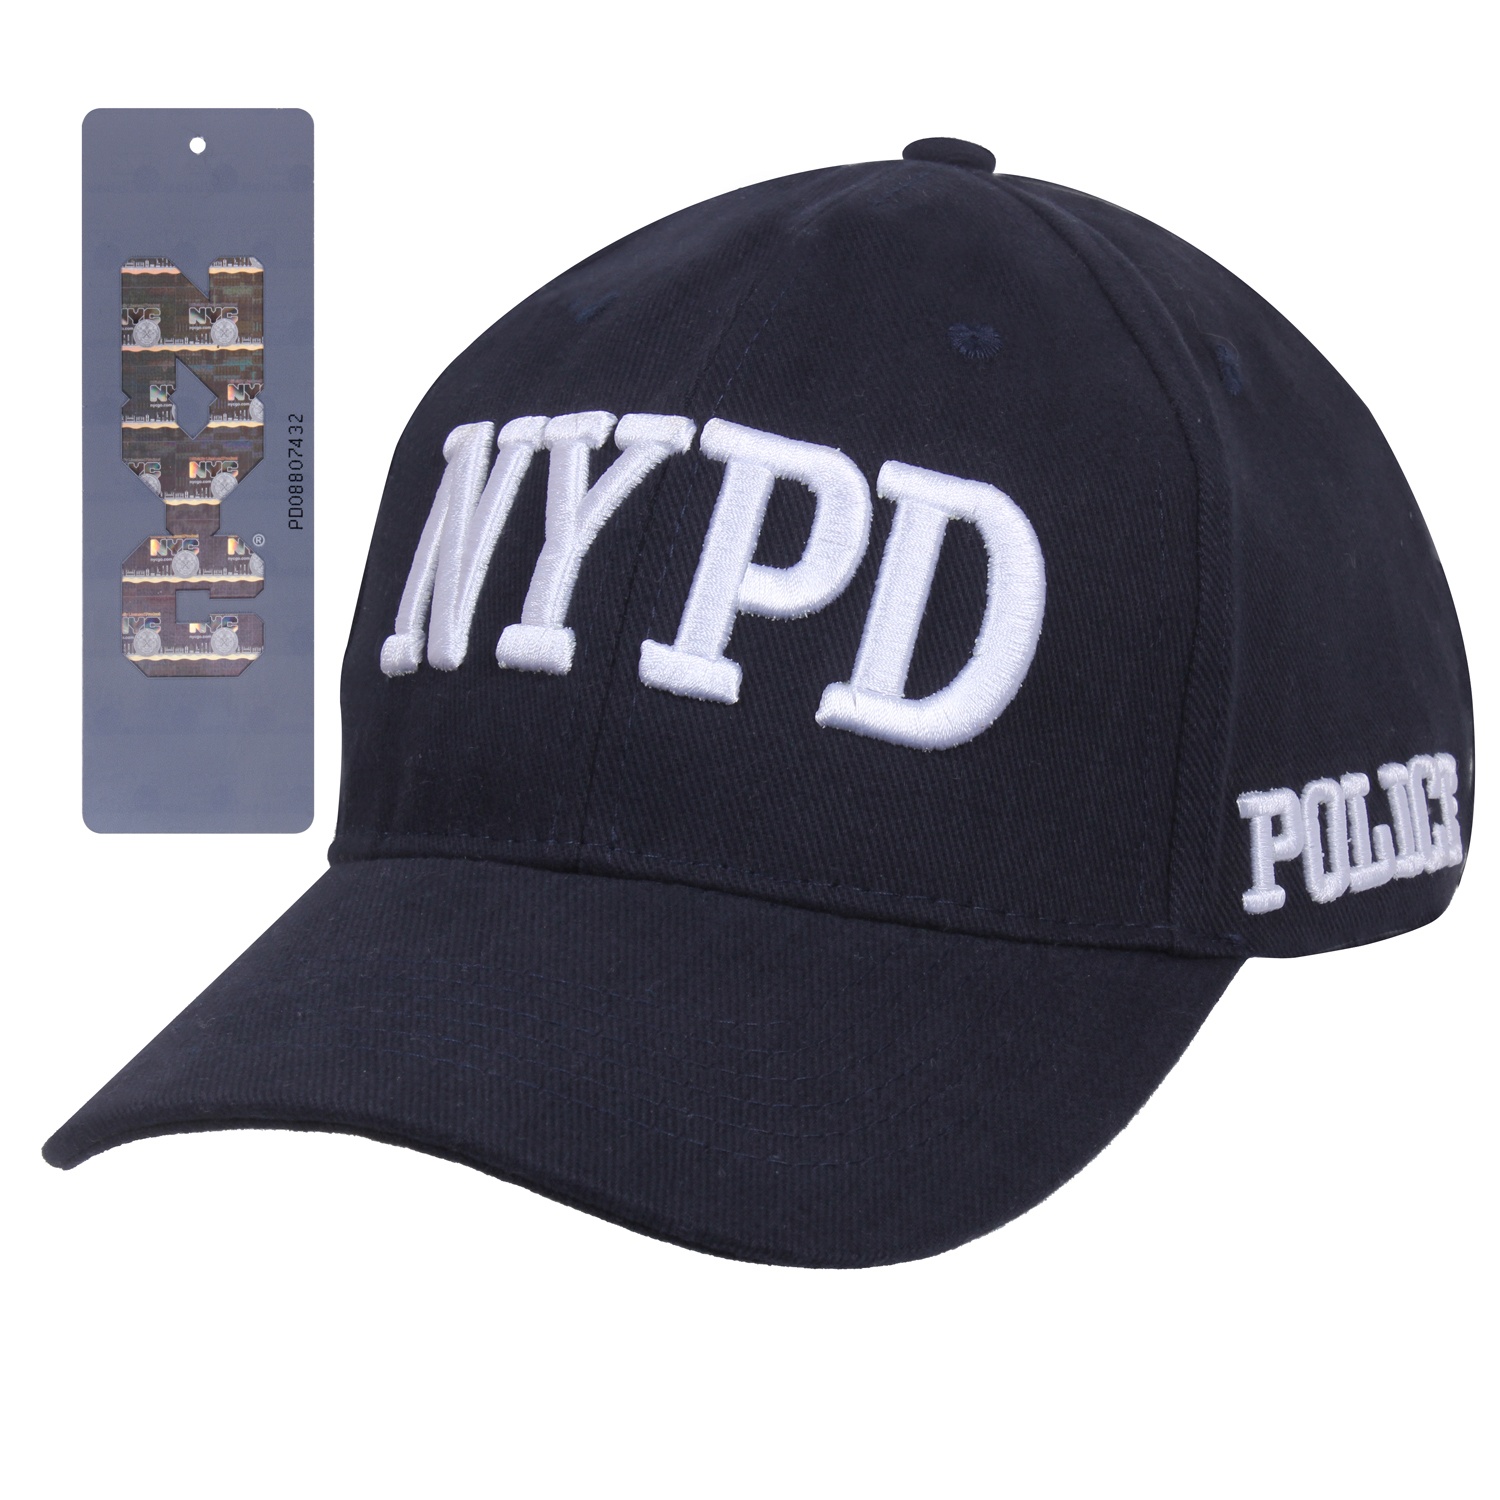 čepice NYPD originál GI modrá